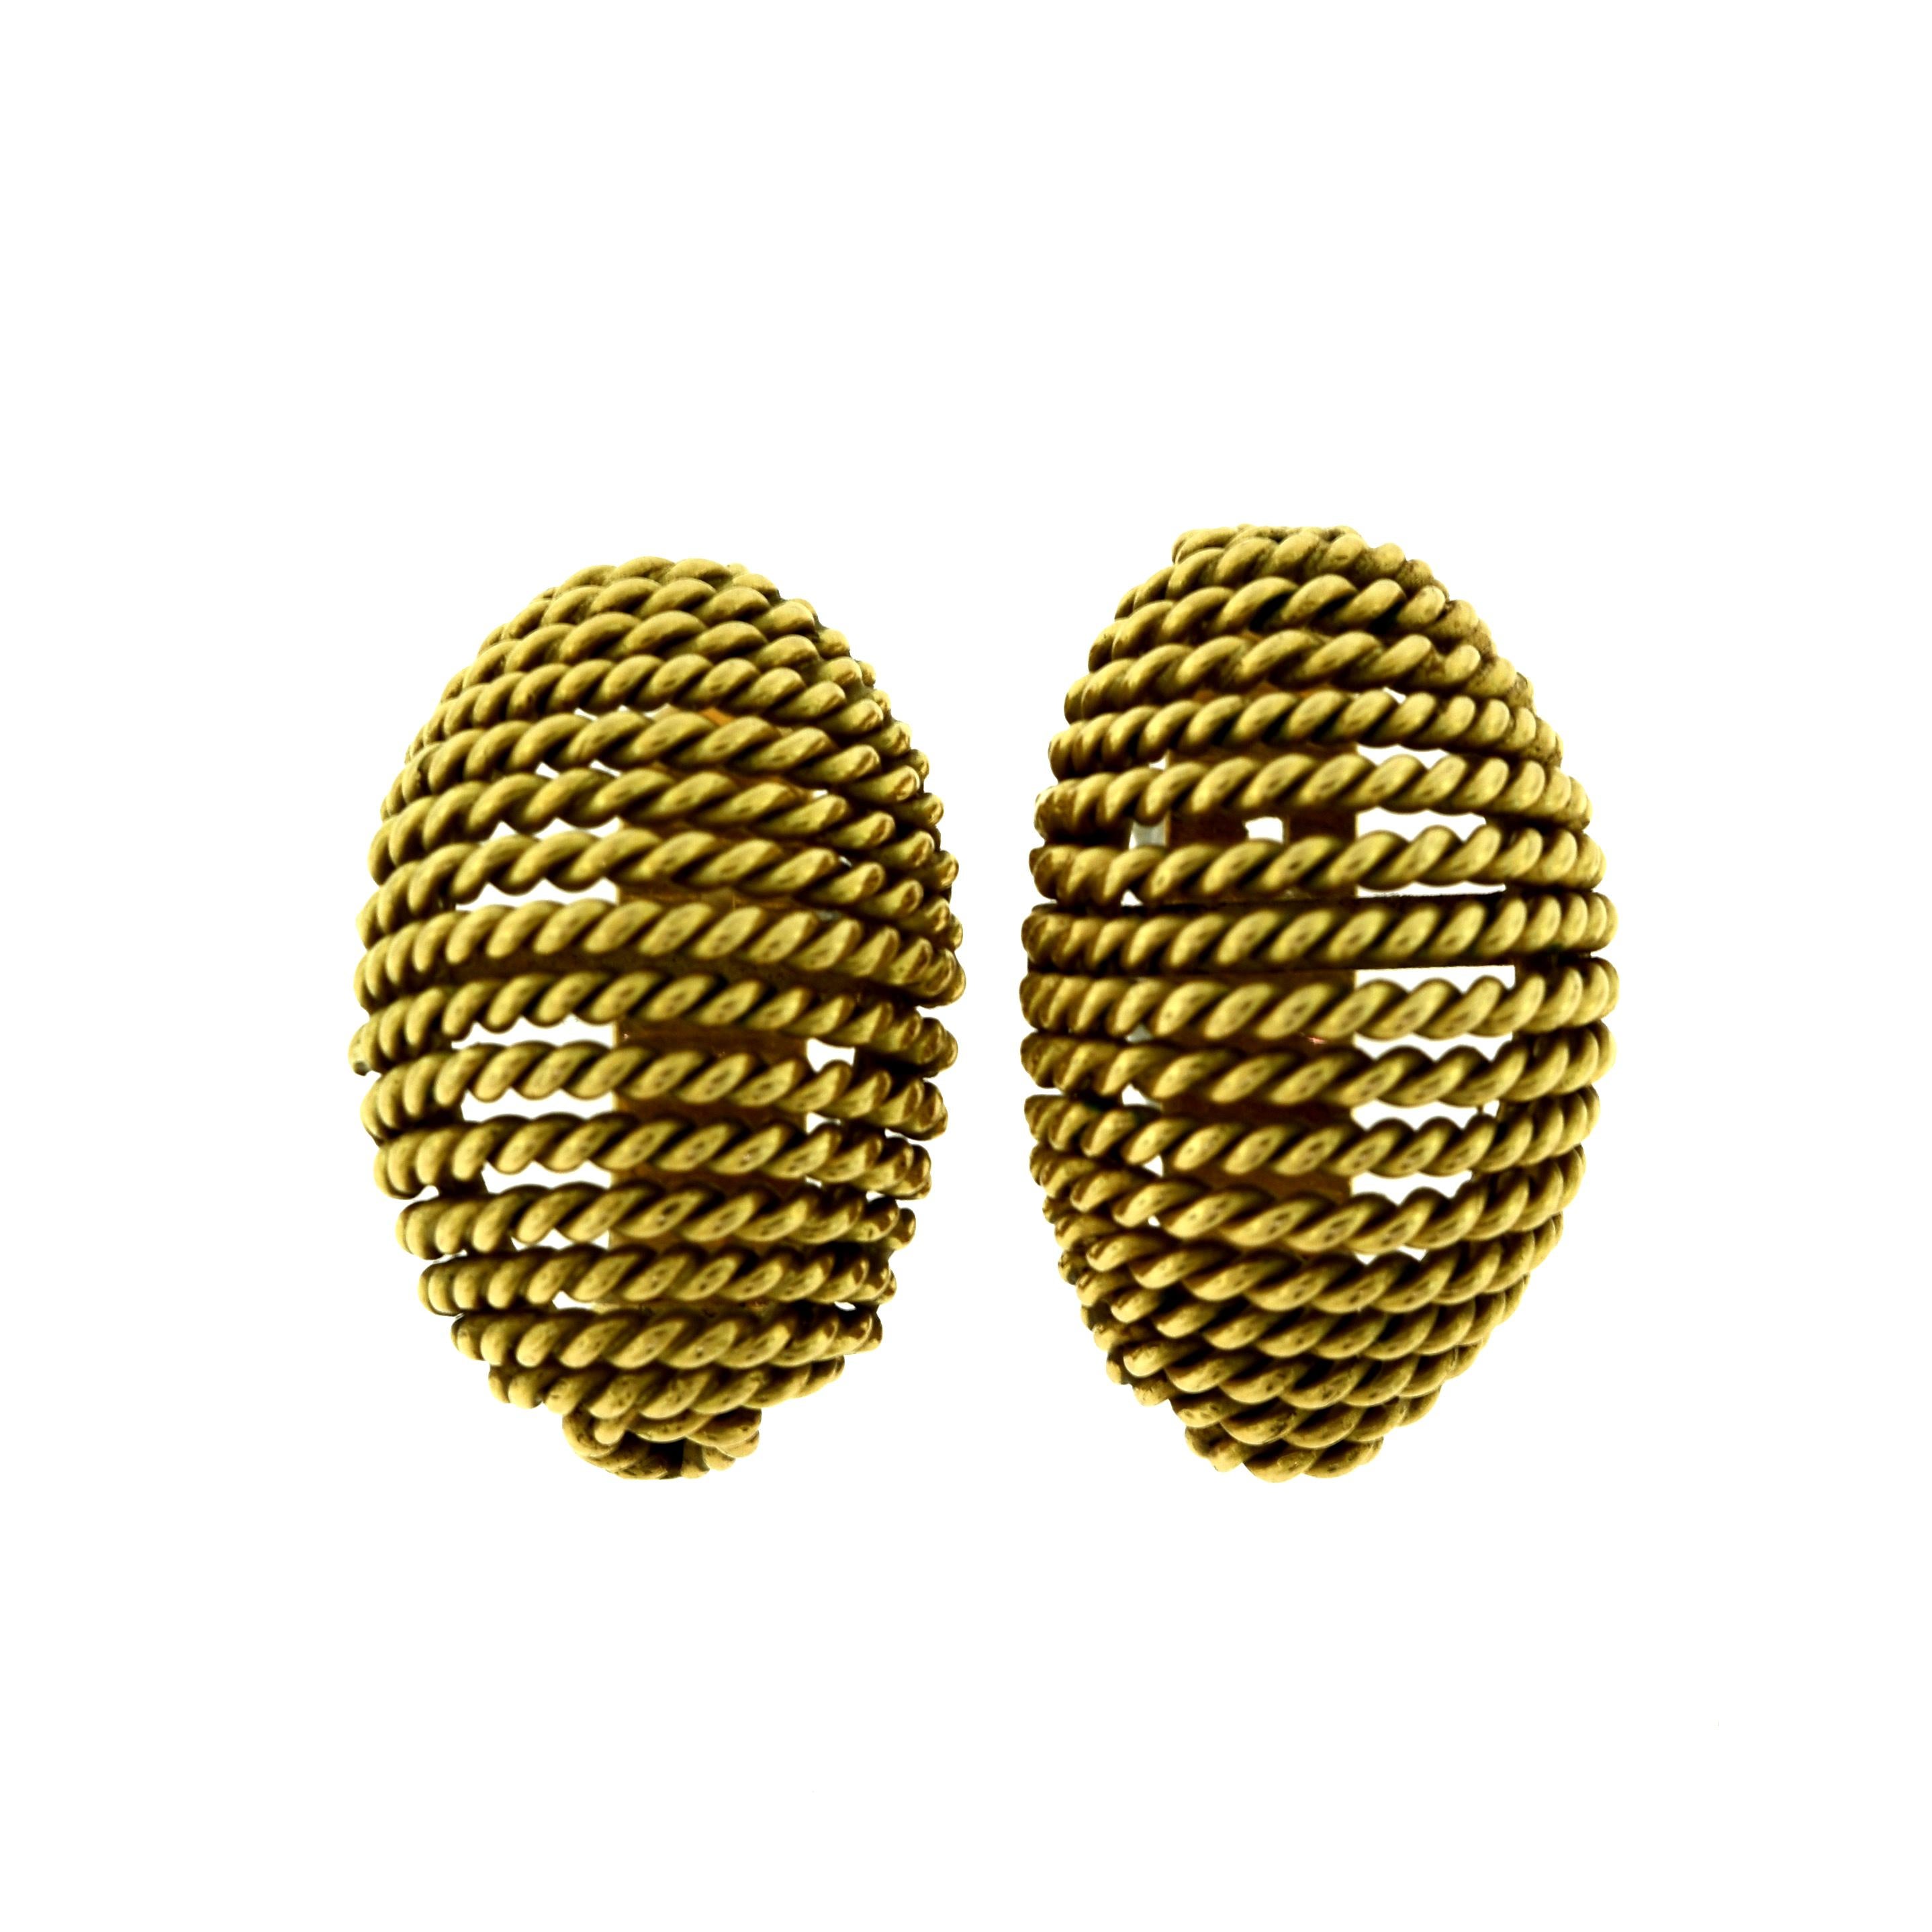 Brilliance Jewels, Miami
Haben Sie Fragen? Rufen Sie uns jederzeit an!
786,482,8100

Stil: Ovale strukturierte Ohrringe

Metall: Gelbgold

Metallreinheit: 18k 

Gesamtgewicht des Artikels (Gramm): 18,0

Ohrring Länge: ca. 1,0 Zoll

Breite des